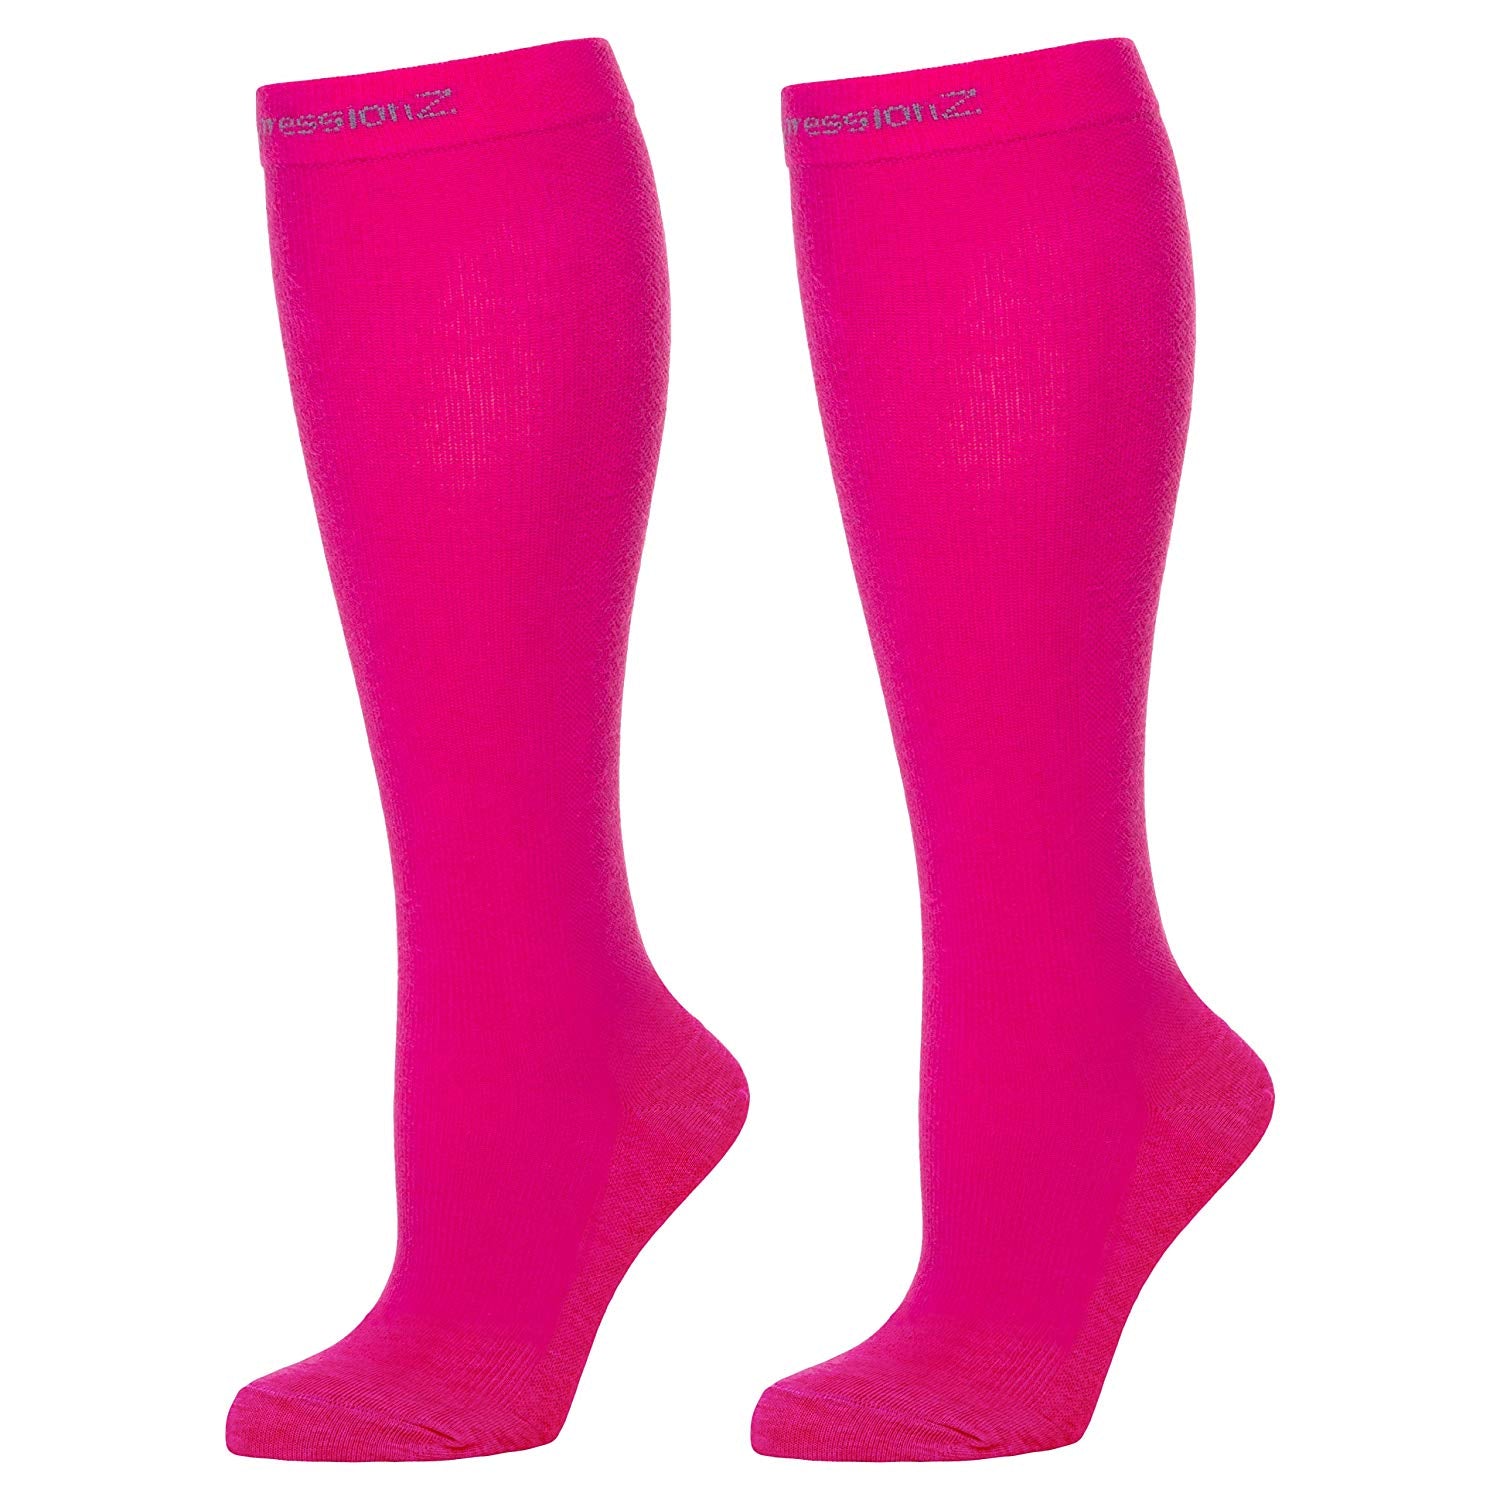 Compression Socks (20-30 mmHg) - Pink